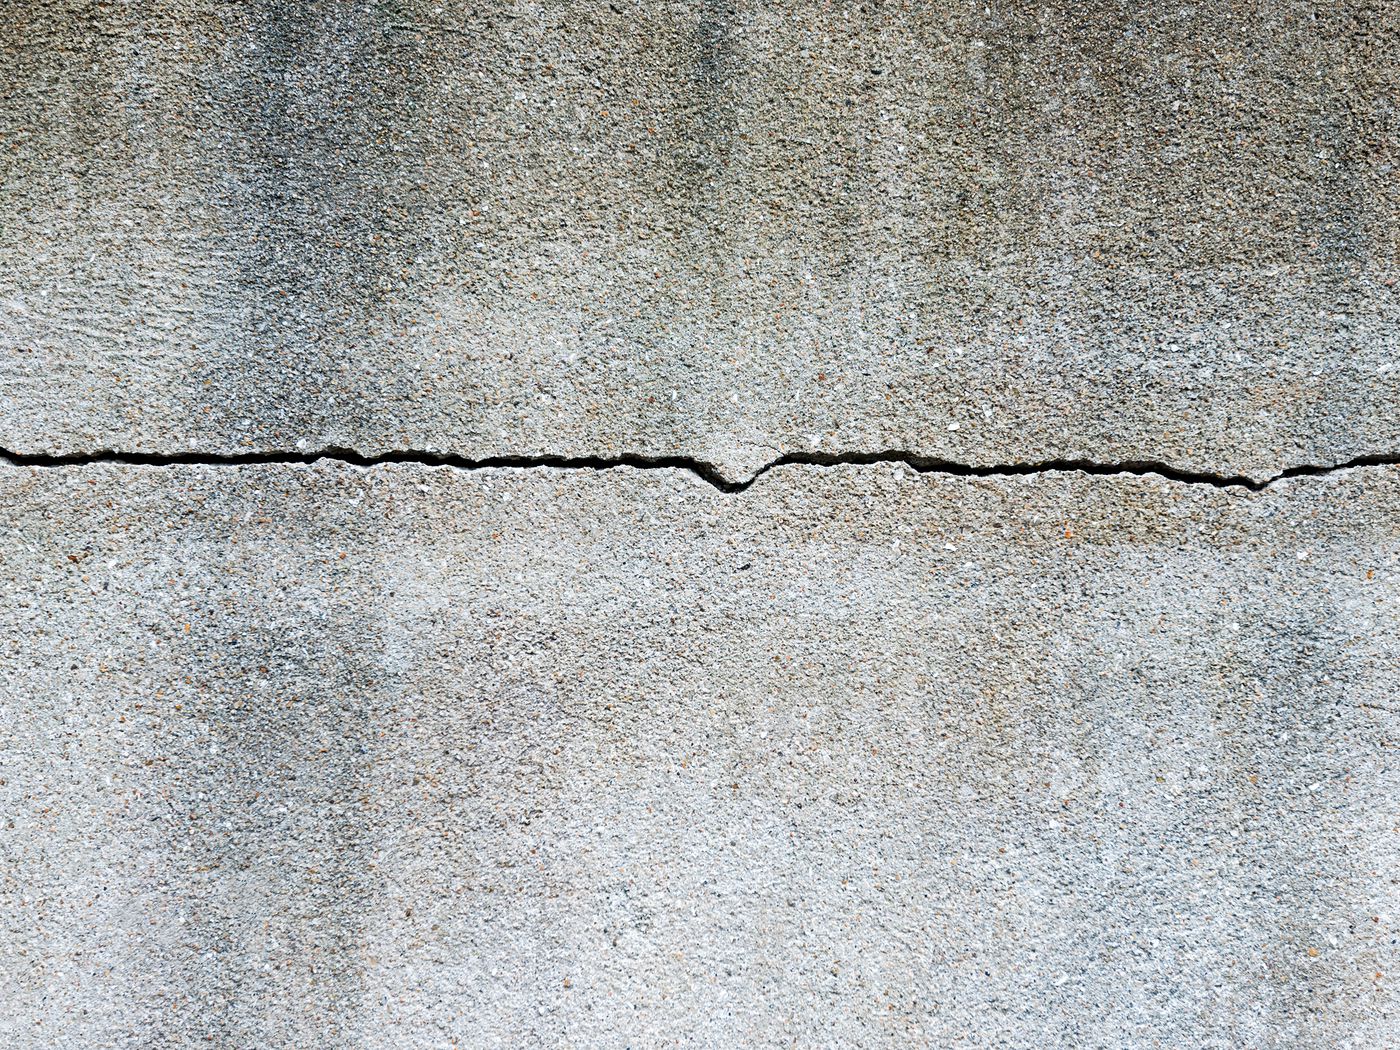 Leak and crack in concrete